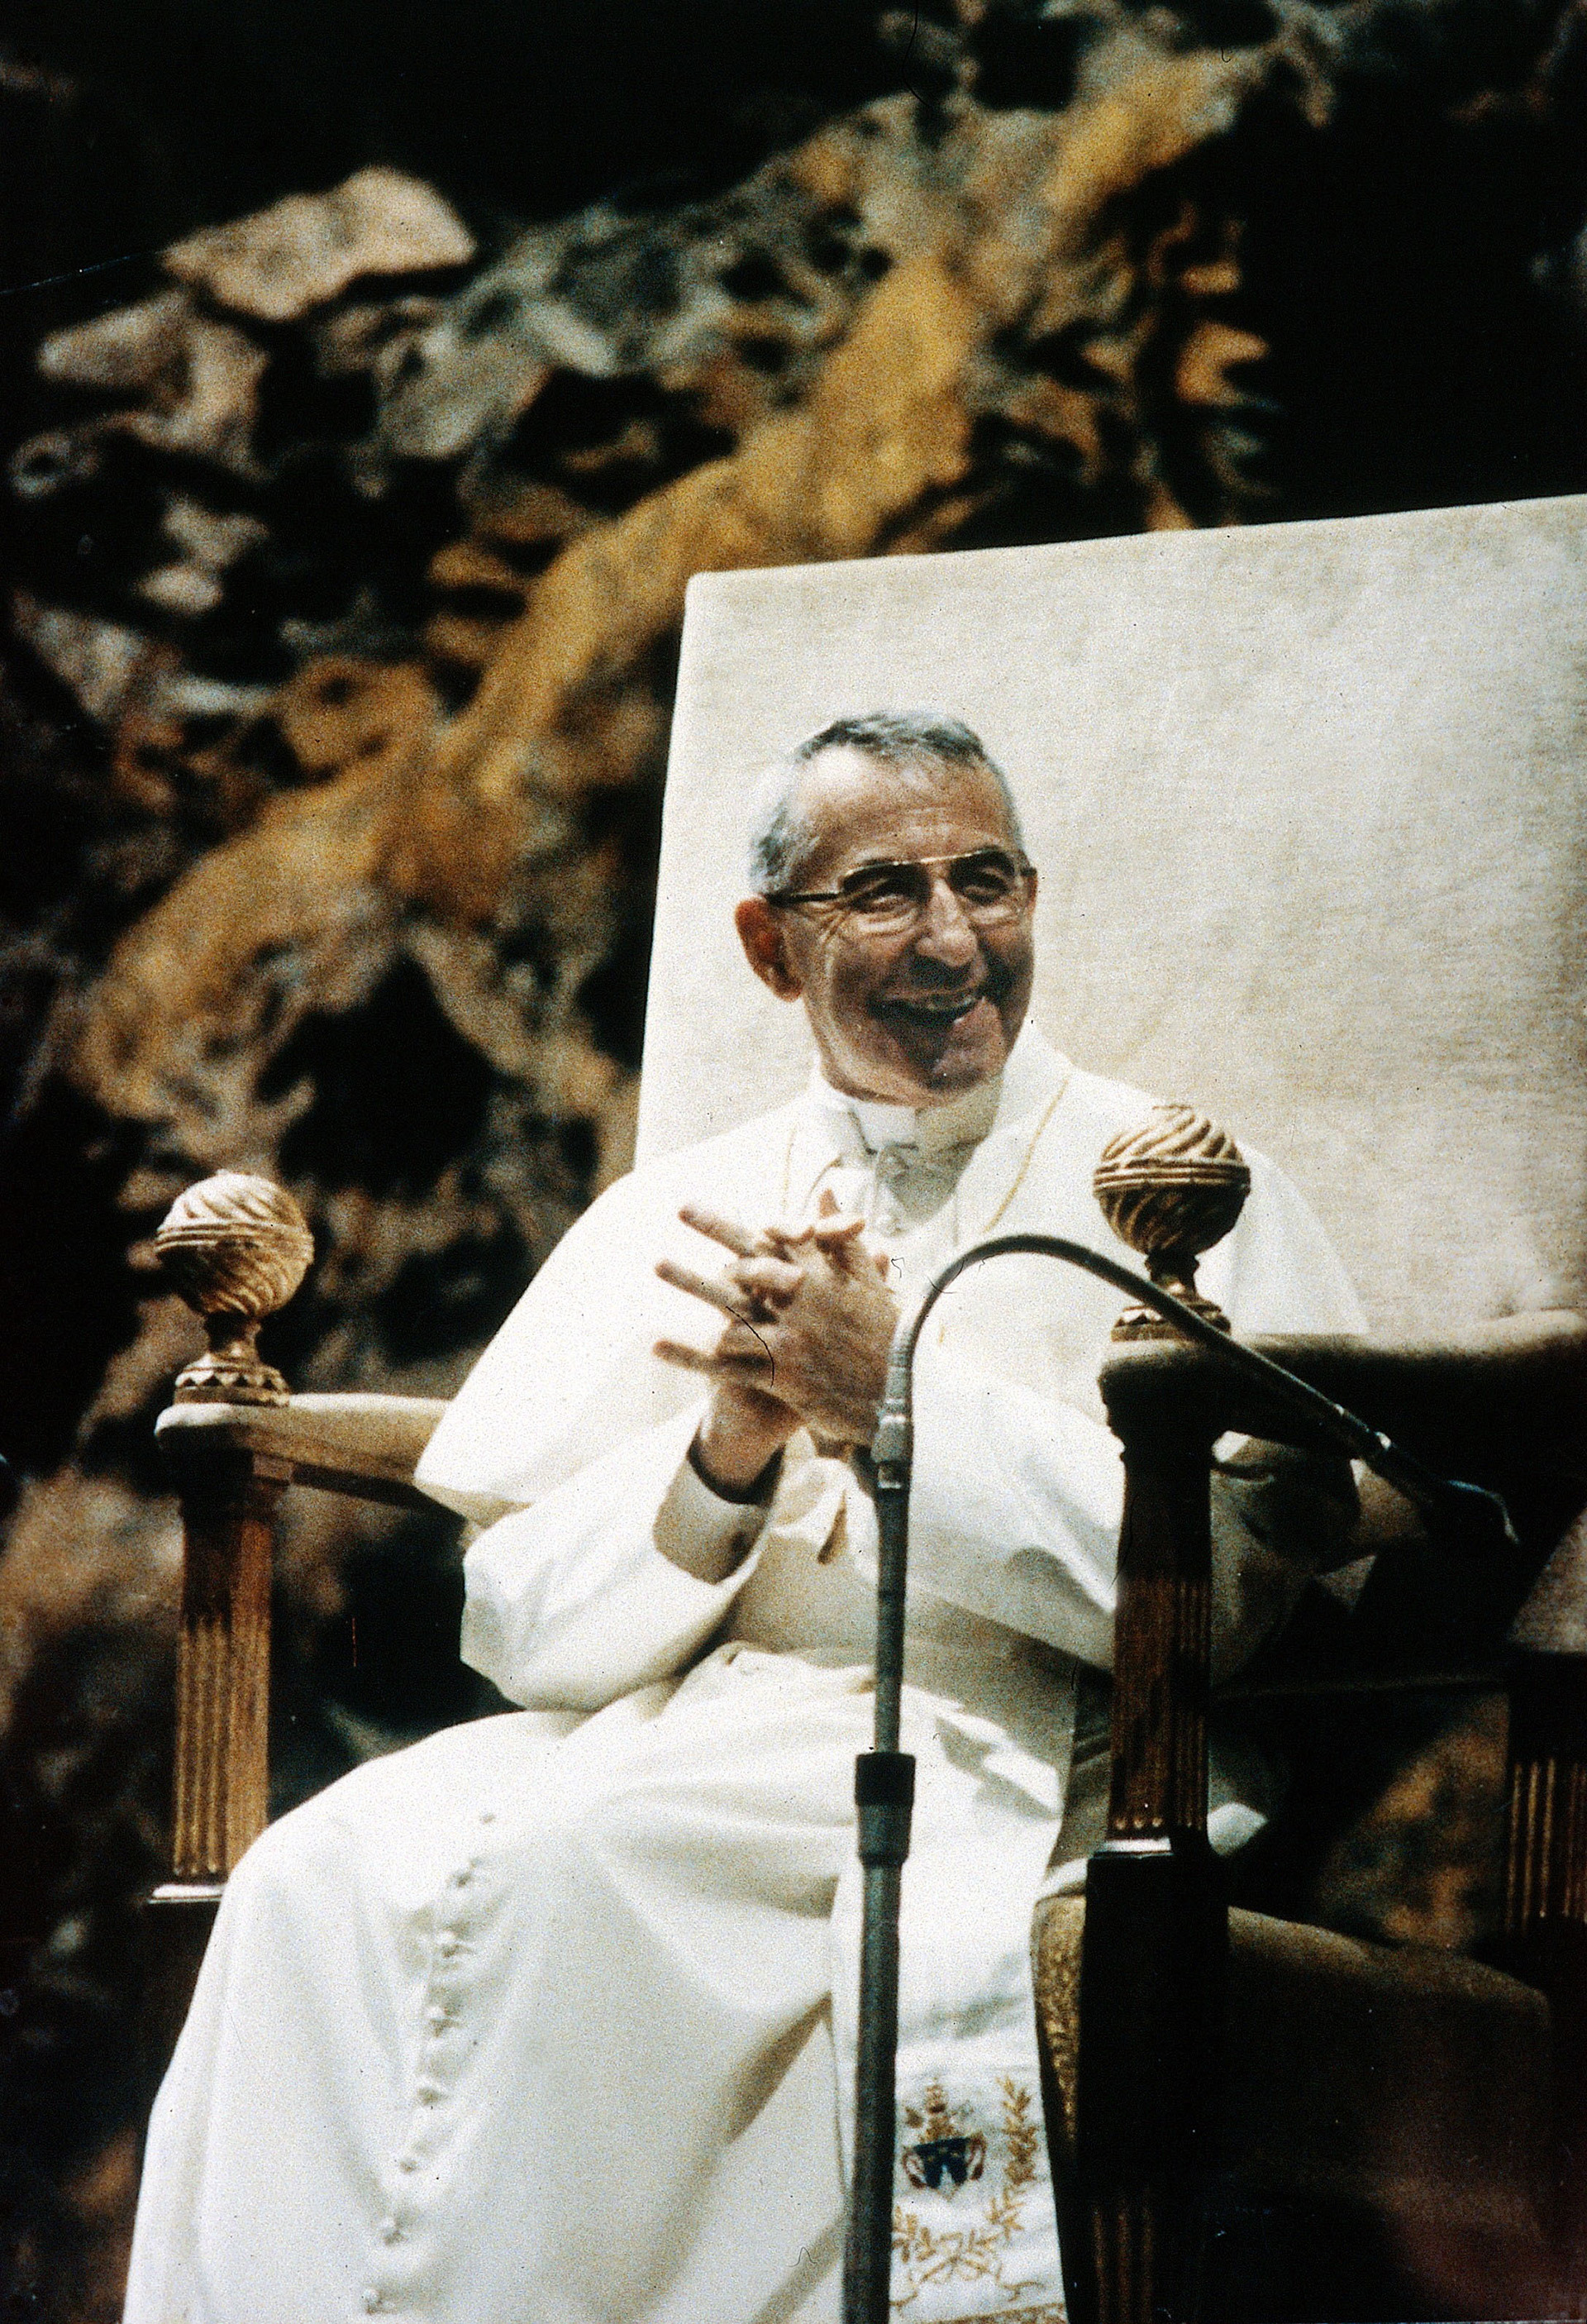 Albino Luciani, conocido como "el Papa de la sonrisa" fue Sumo Pontífice apenas 33 días, a sus 66 años. Su muerte está cubierta de sospechas y misterio sobre un supuesto asesinato